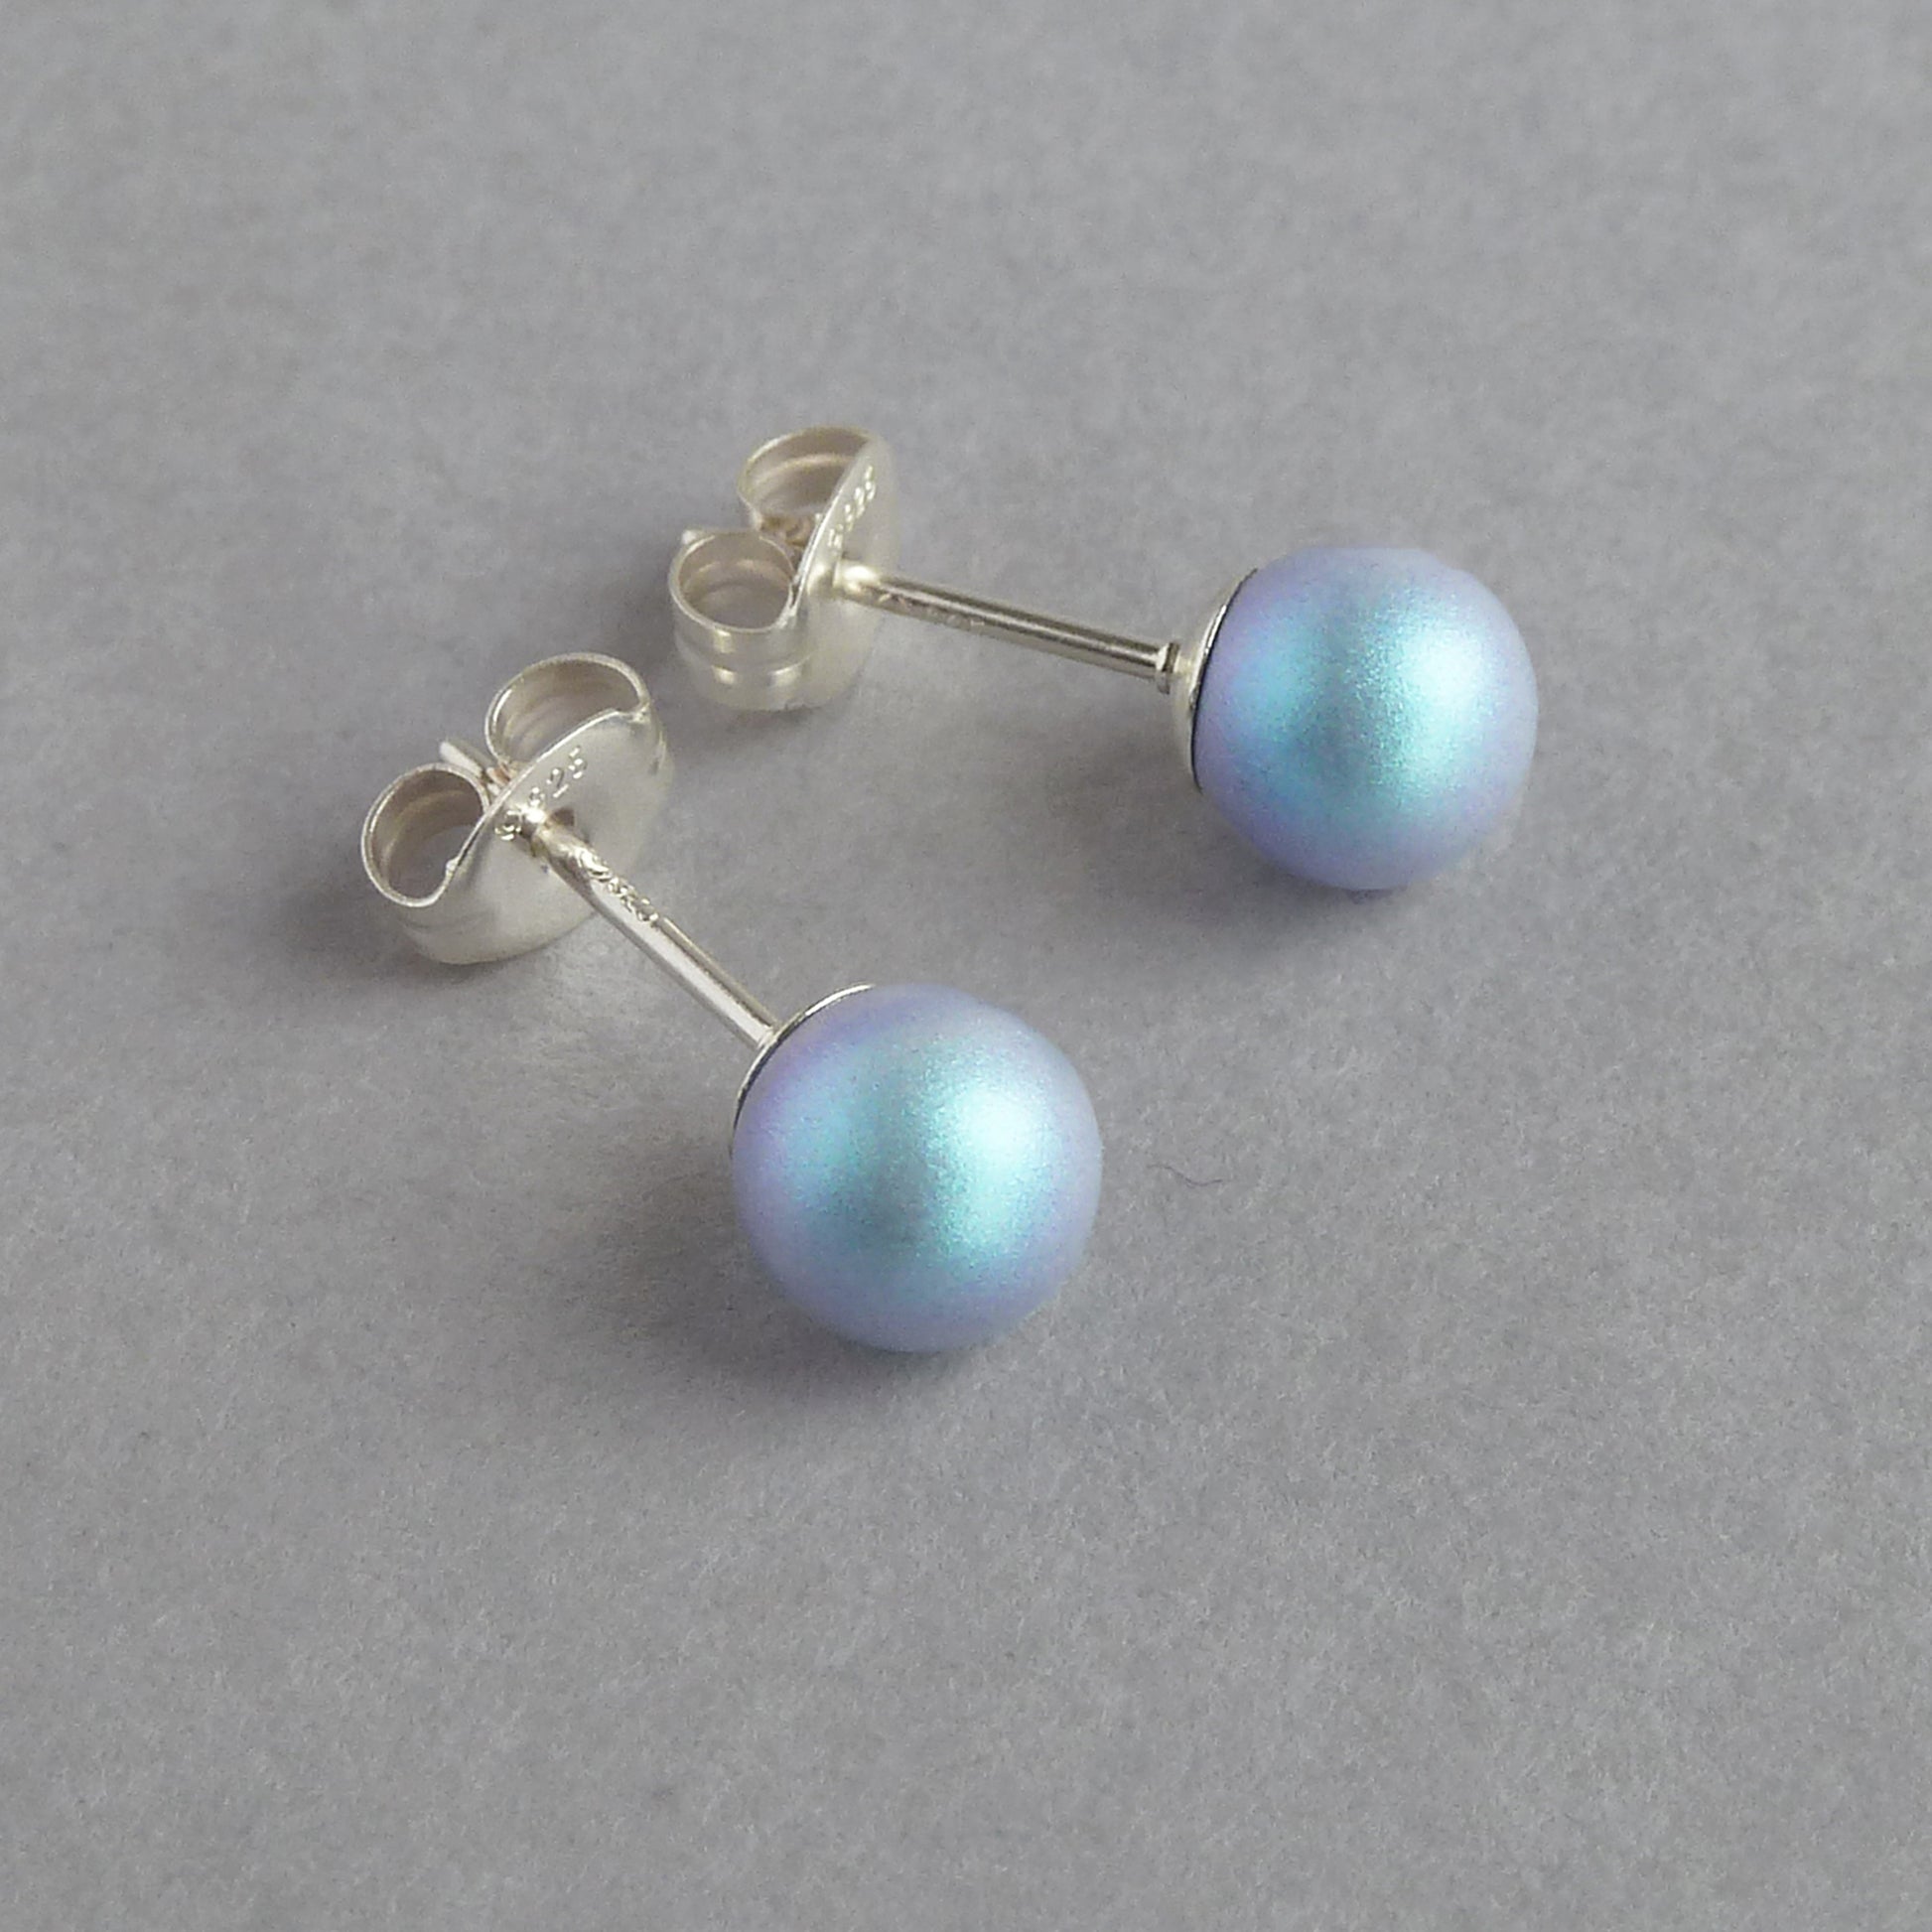 6mm pale blue stud earrings